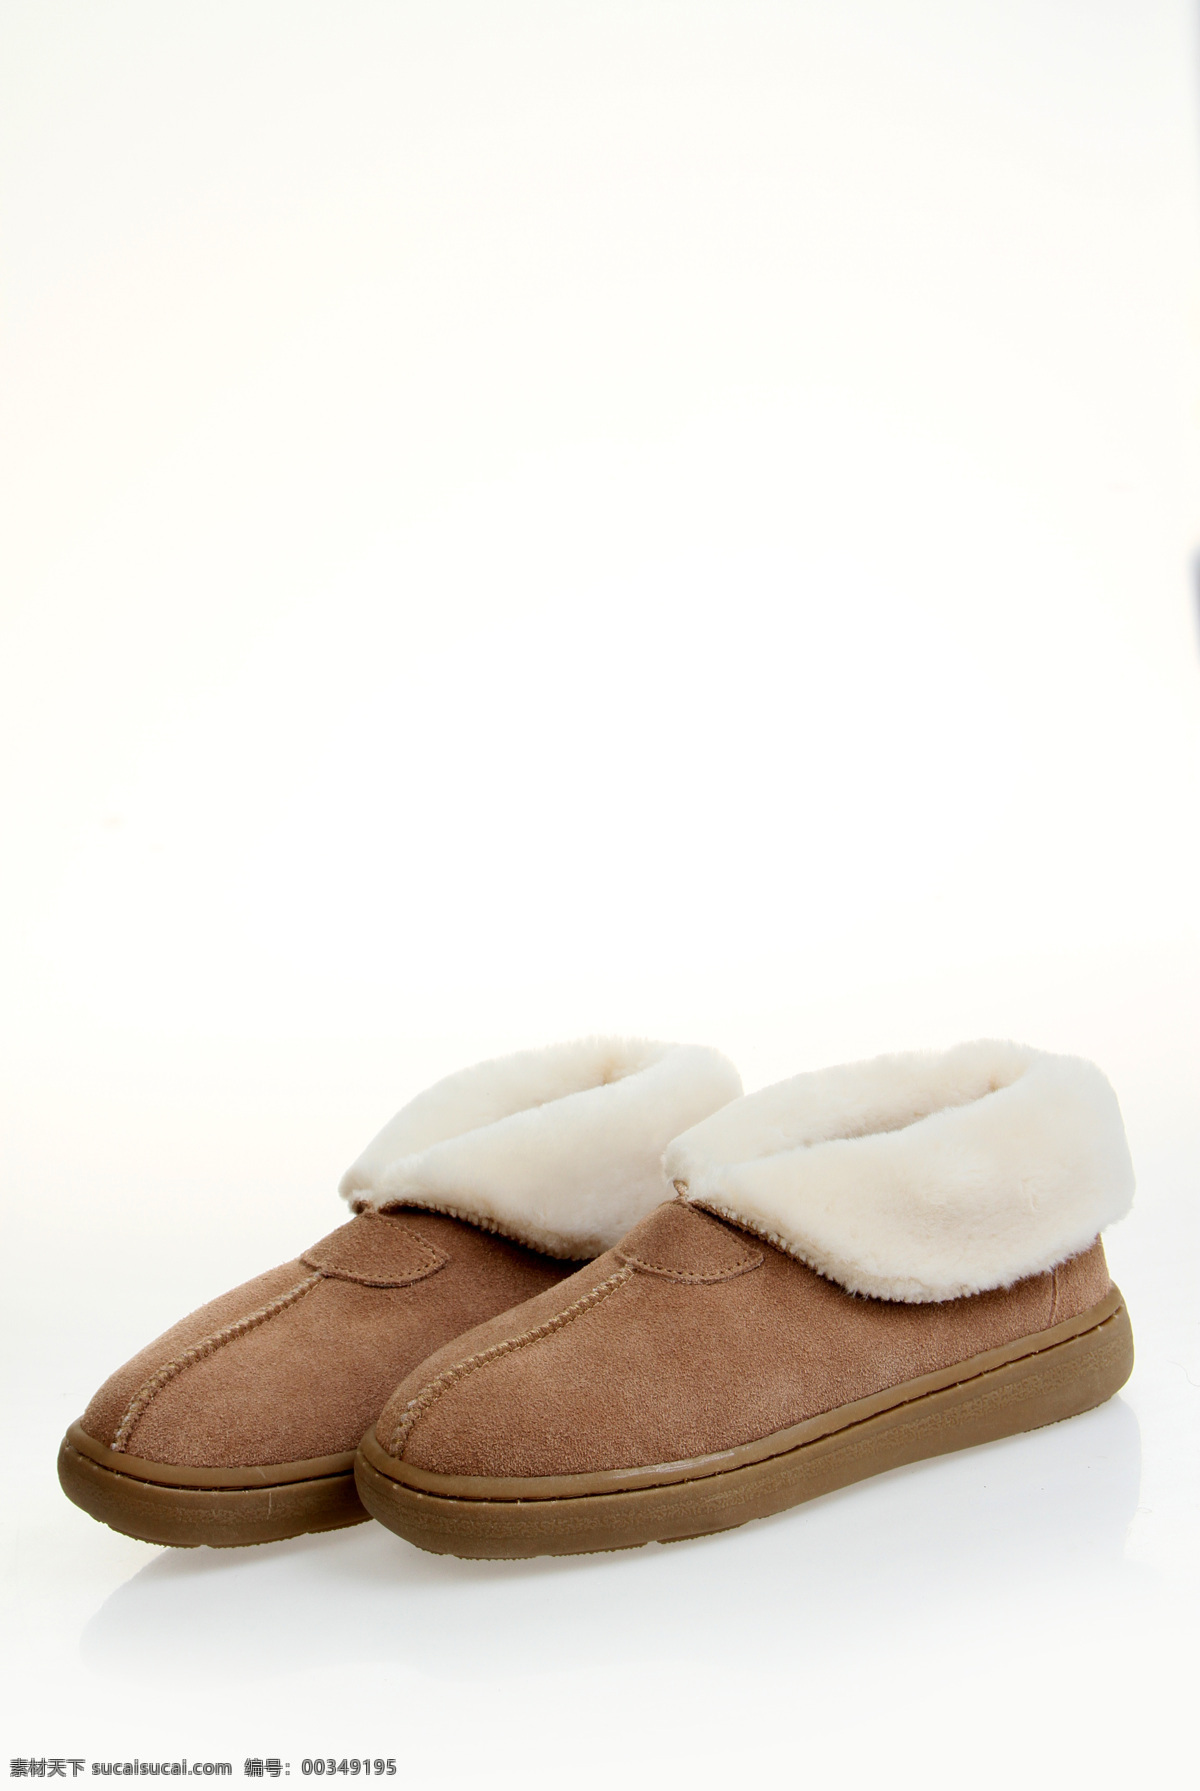 冬季棉鞋 保暖 棉拖 加绒棉鞋 短靴 棉鞋 生活用品 生活百科 家居生活